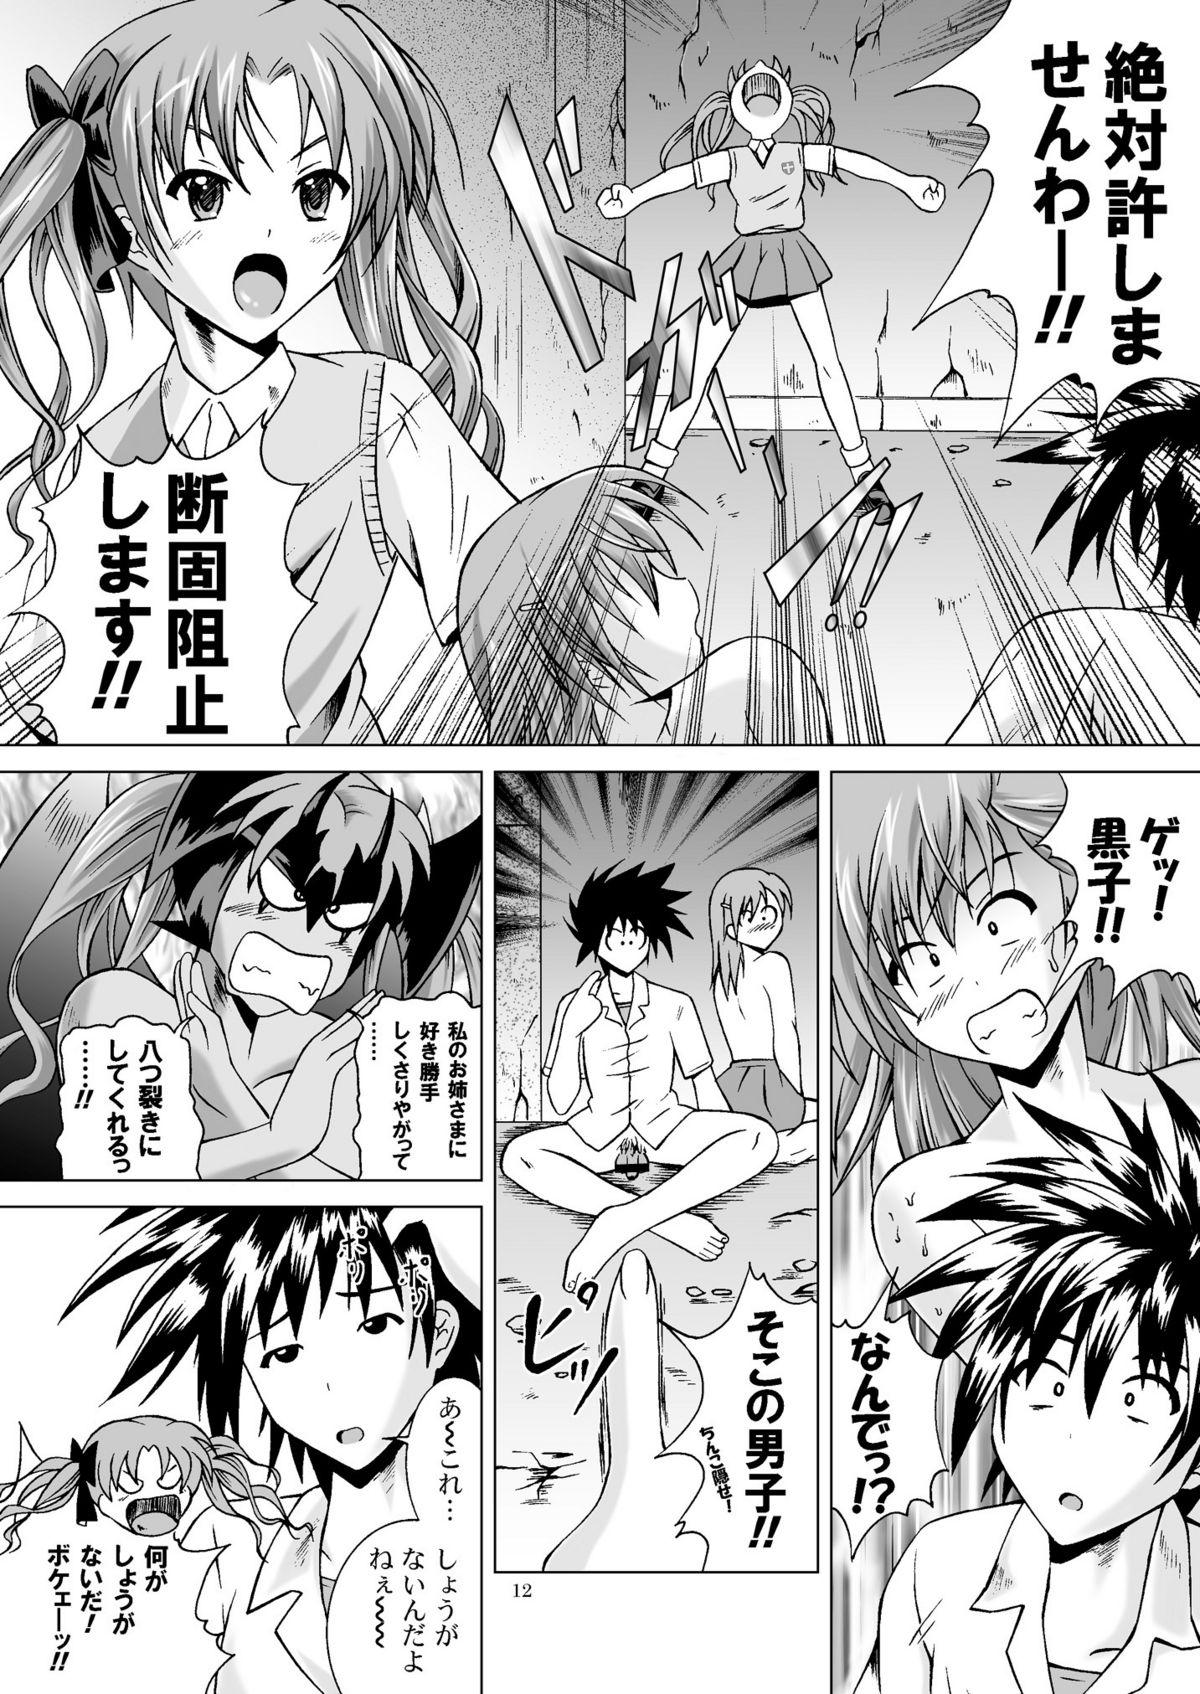 Classic Toaru Shoujo ni Kantsuu Hou - Toaru kagaku no railgun 3some - Page 12